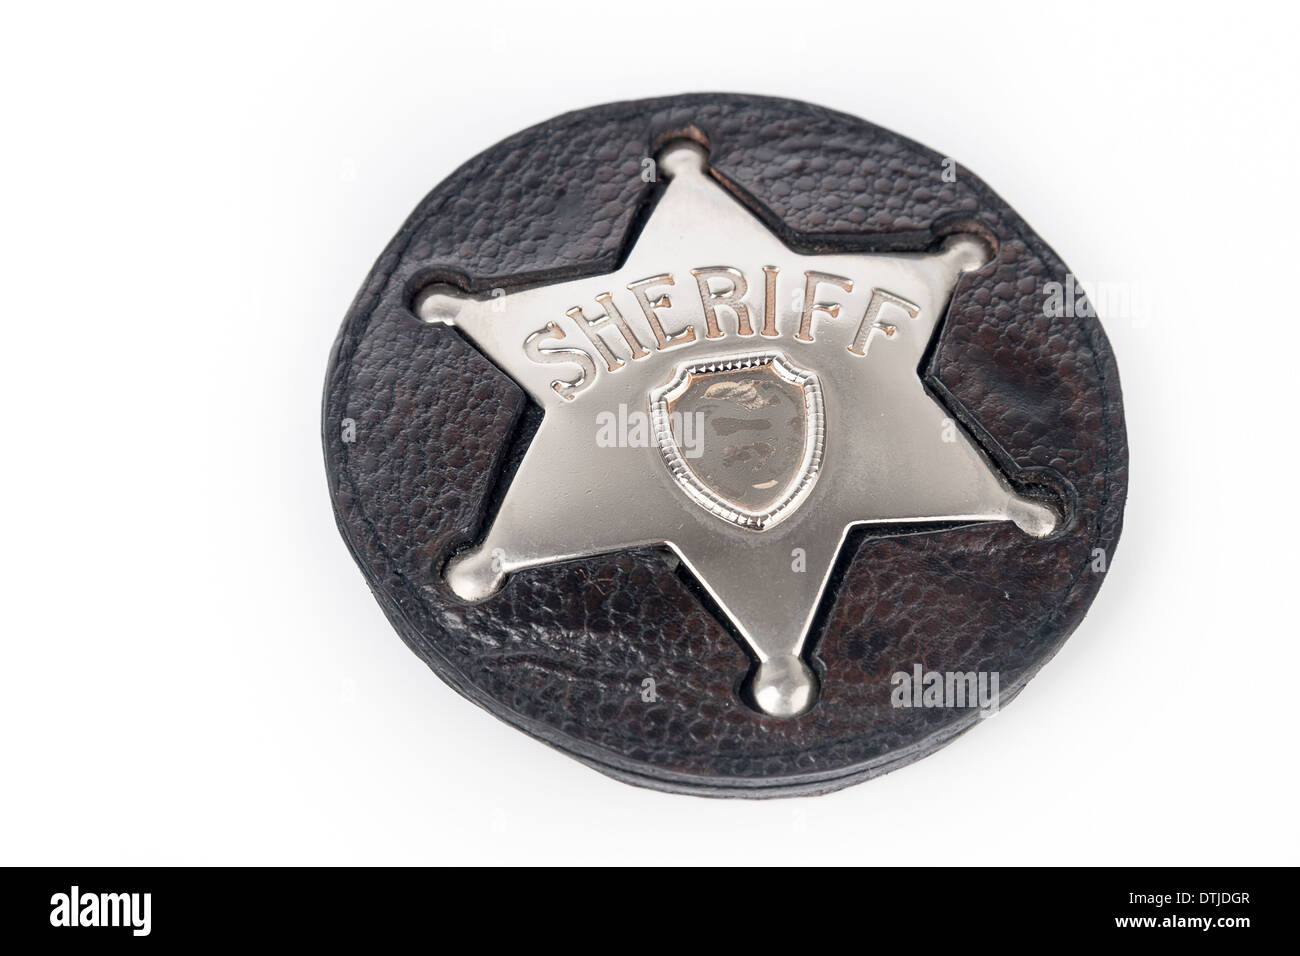 Sheriff's badge isolated on white background Stock Photo